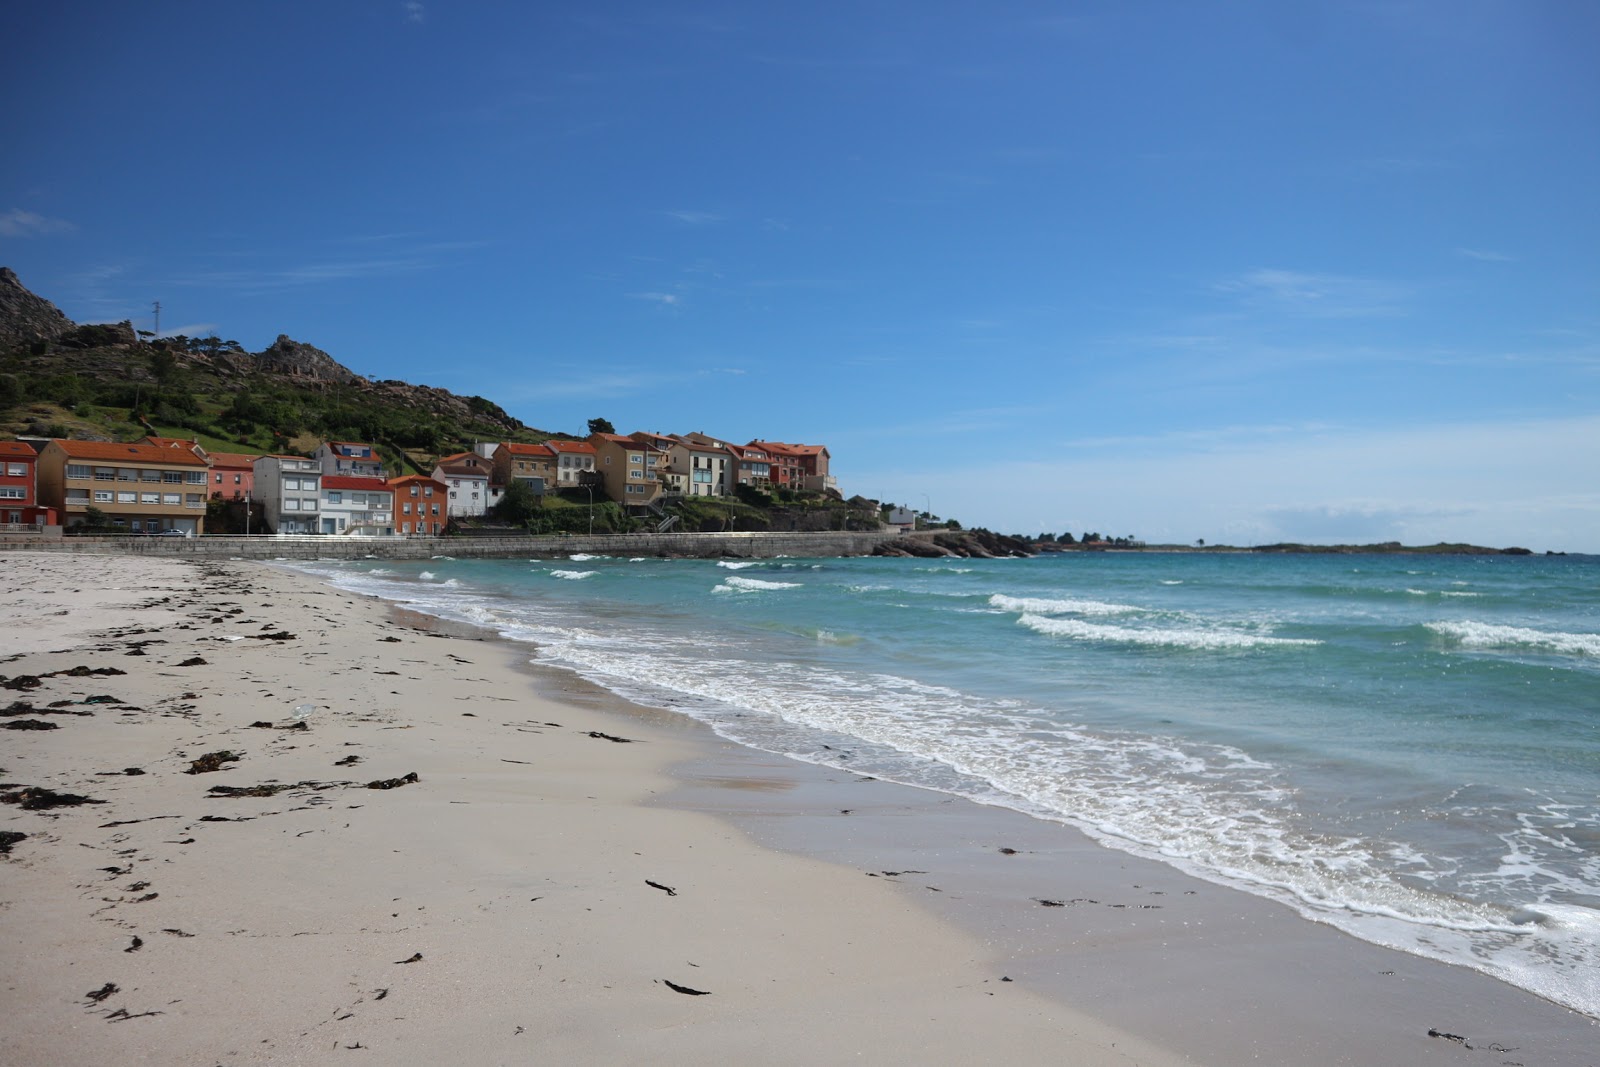 Fotografie cu Praia do Pindo cu o suprafață de nisip fin alb